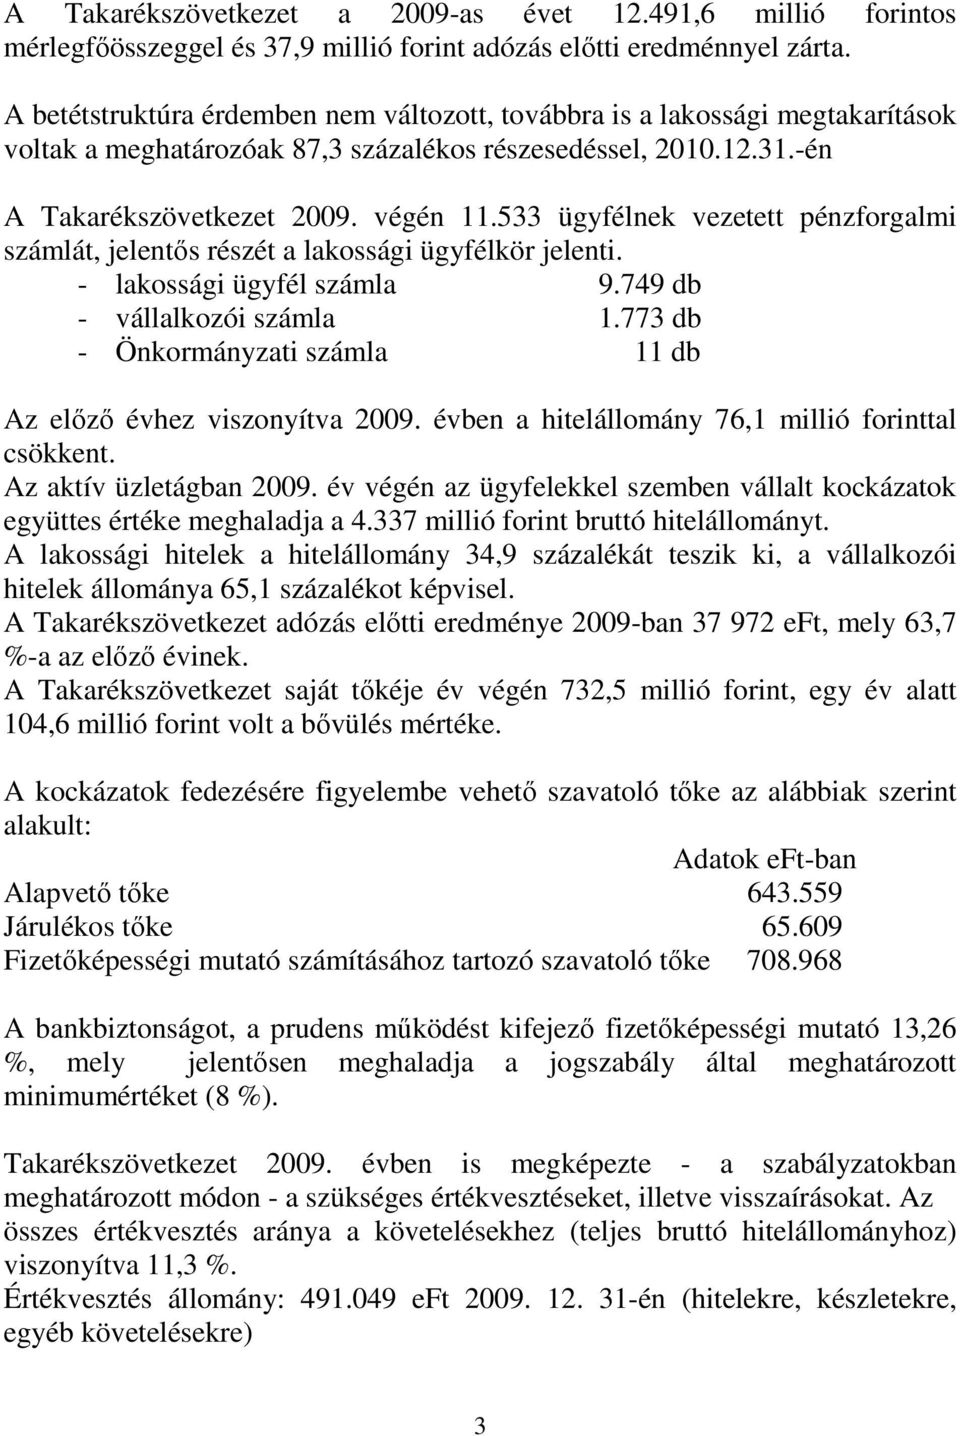 533 ügyfélnek vezetett pénzforgalmi számlát, jelentıs részét a lakossági ügyfélkör jelenti. - lakossági ügyfél számla 9.749 db - vállalkozói számla 1.